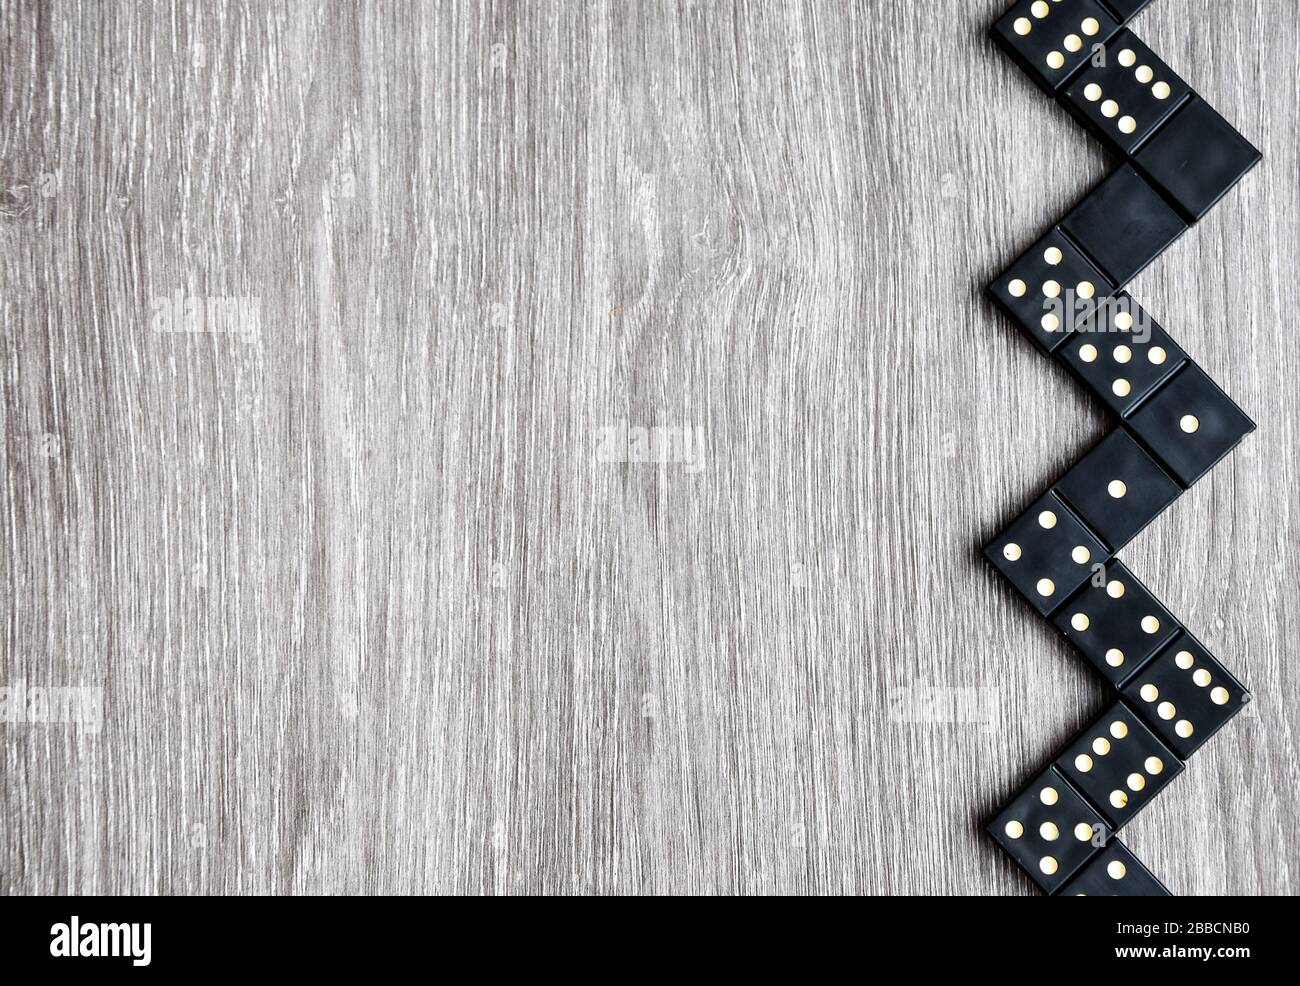 Draufsicht auf schwarze Domino-Würfel auf einem hellen Holztisch,  Spielvorgang von Dominosteinen, Kopierraum Stockfotografie - Alamy